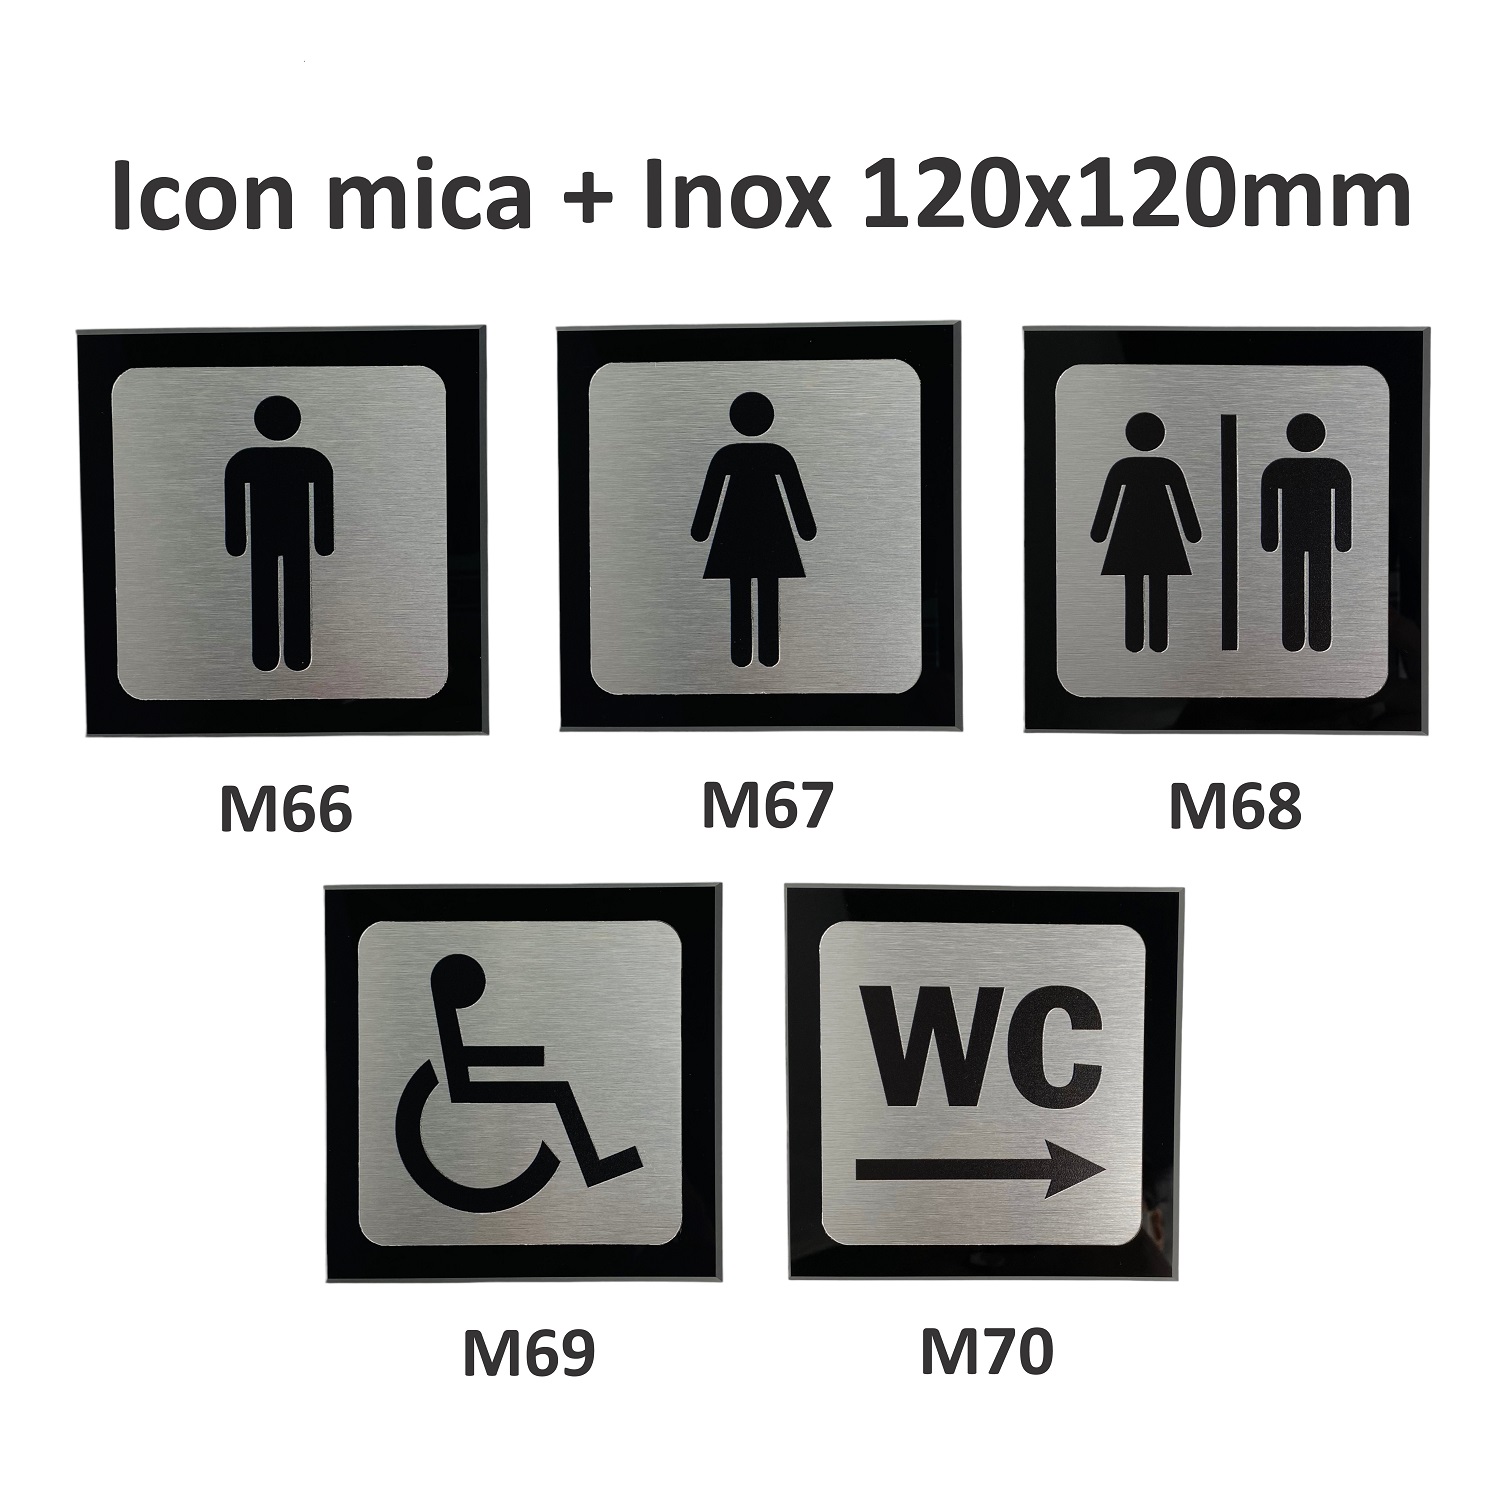 Icon mica + inox M66 / M67 / M68 / M69 / M70 120x120mm